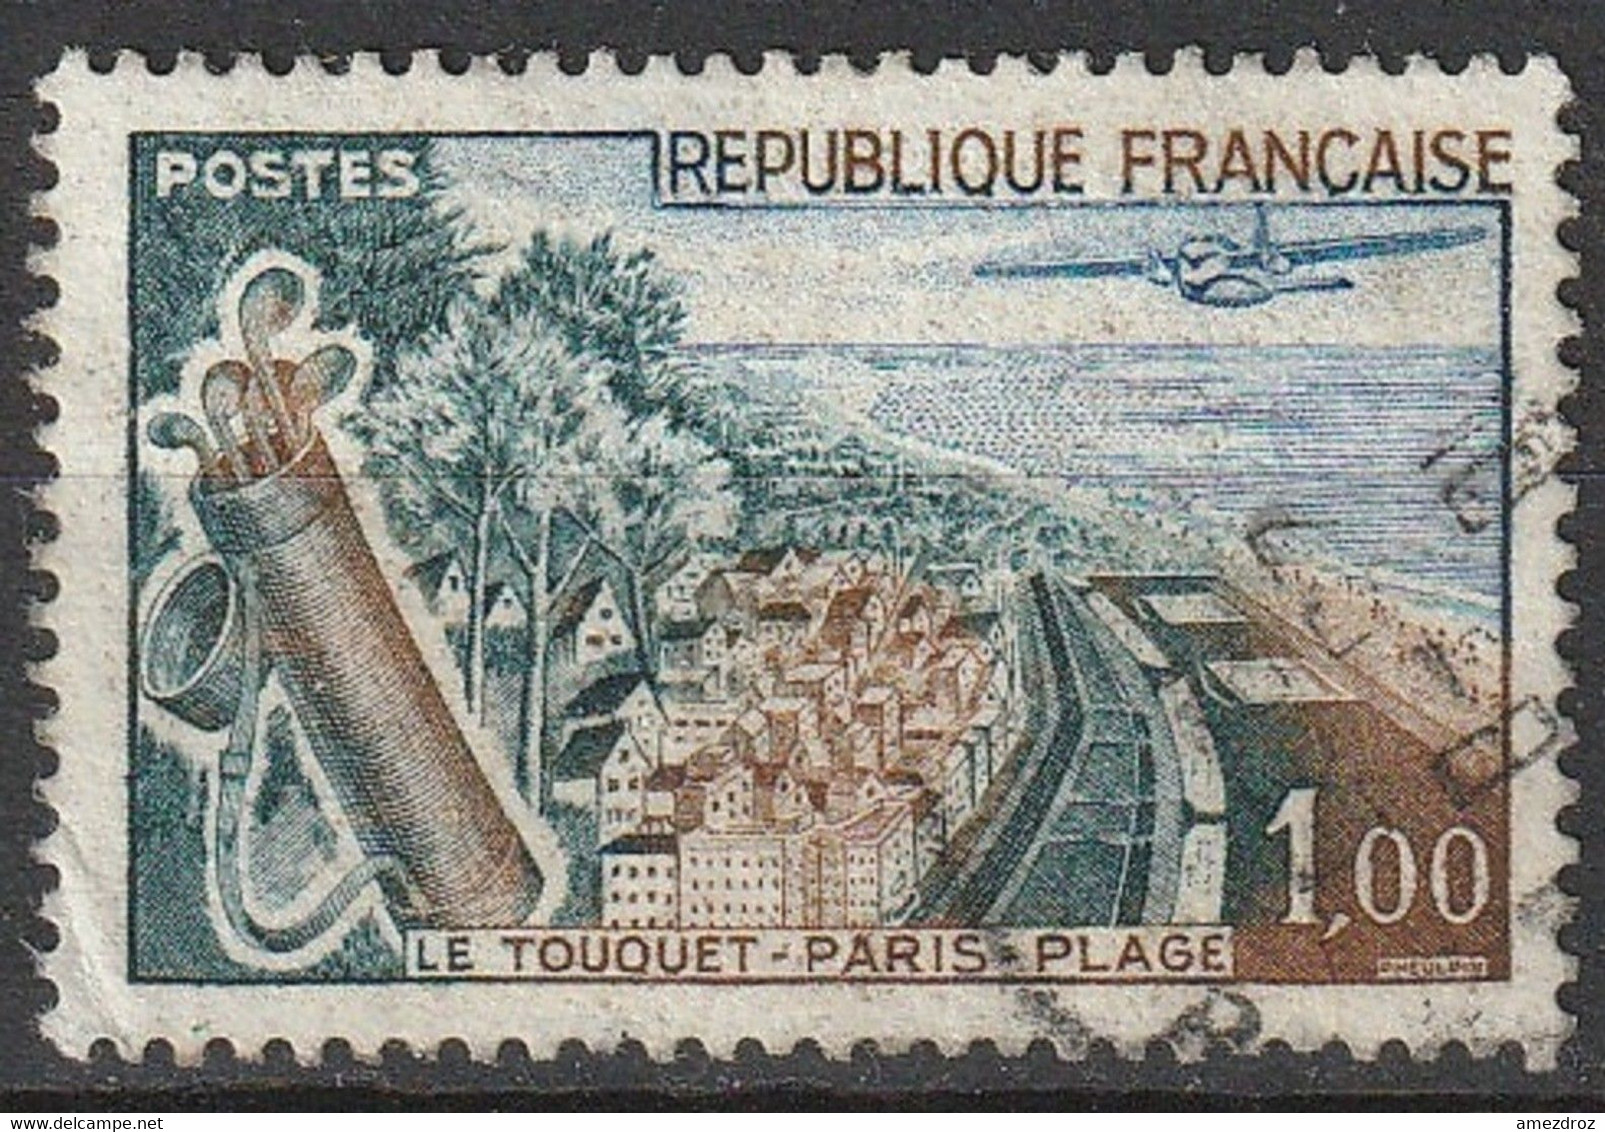 France 1962 N° 1355b Le Touquet Paris Plage, Plage Verte (G10) - Used Stamps